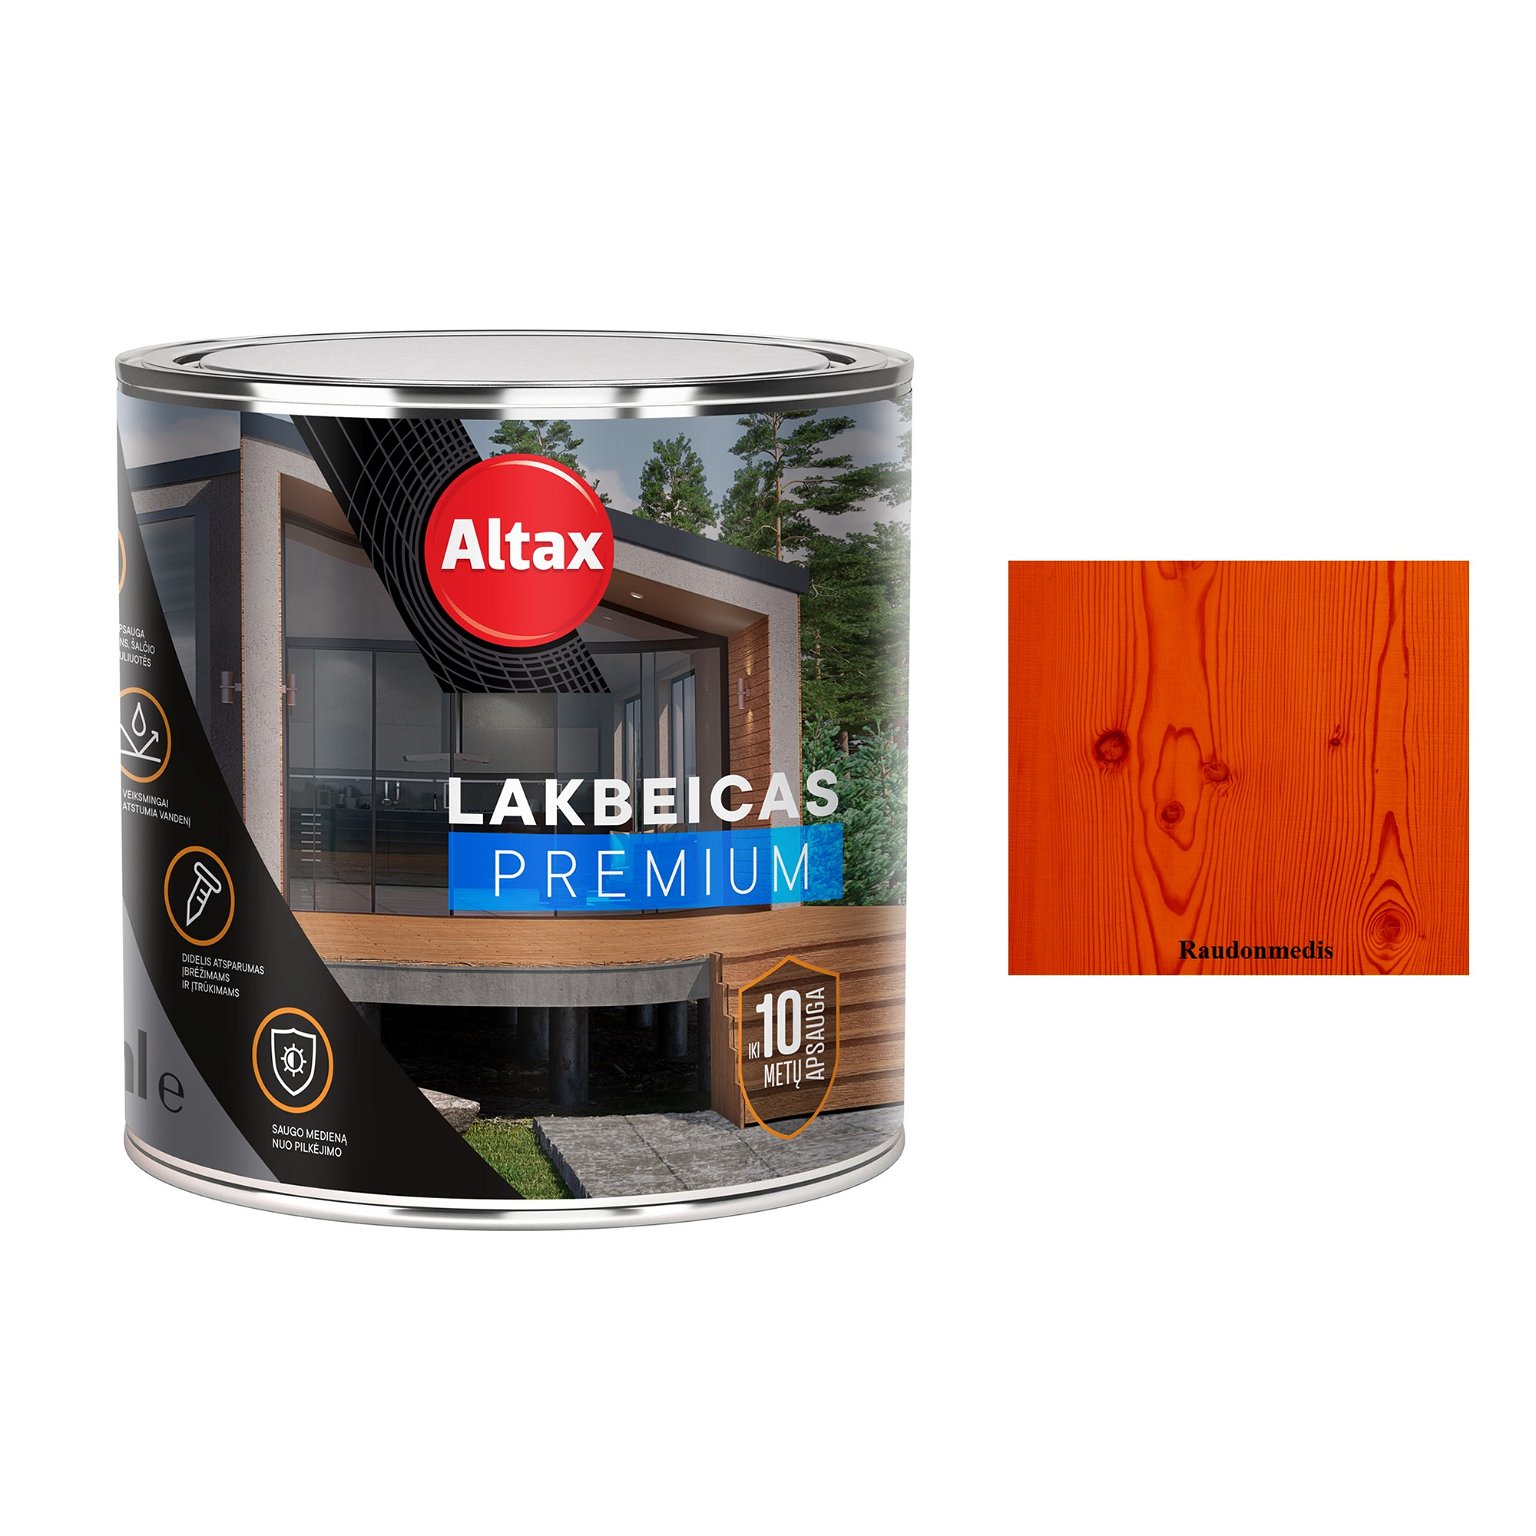 Medienos lakas su beicu ALTAX Premium, raudonmedžio sp., 250 ml